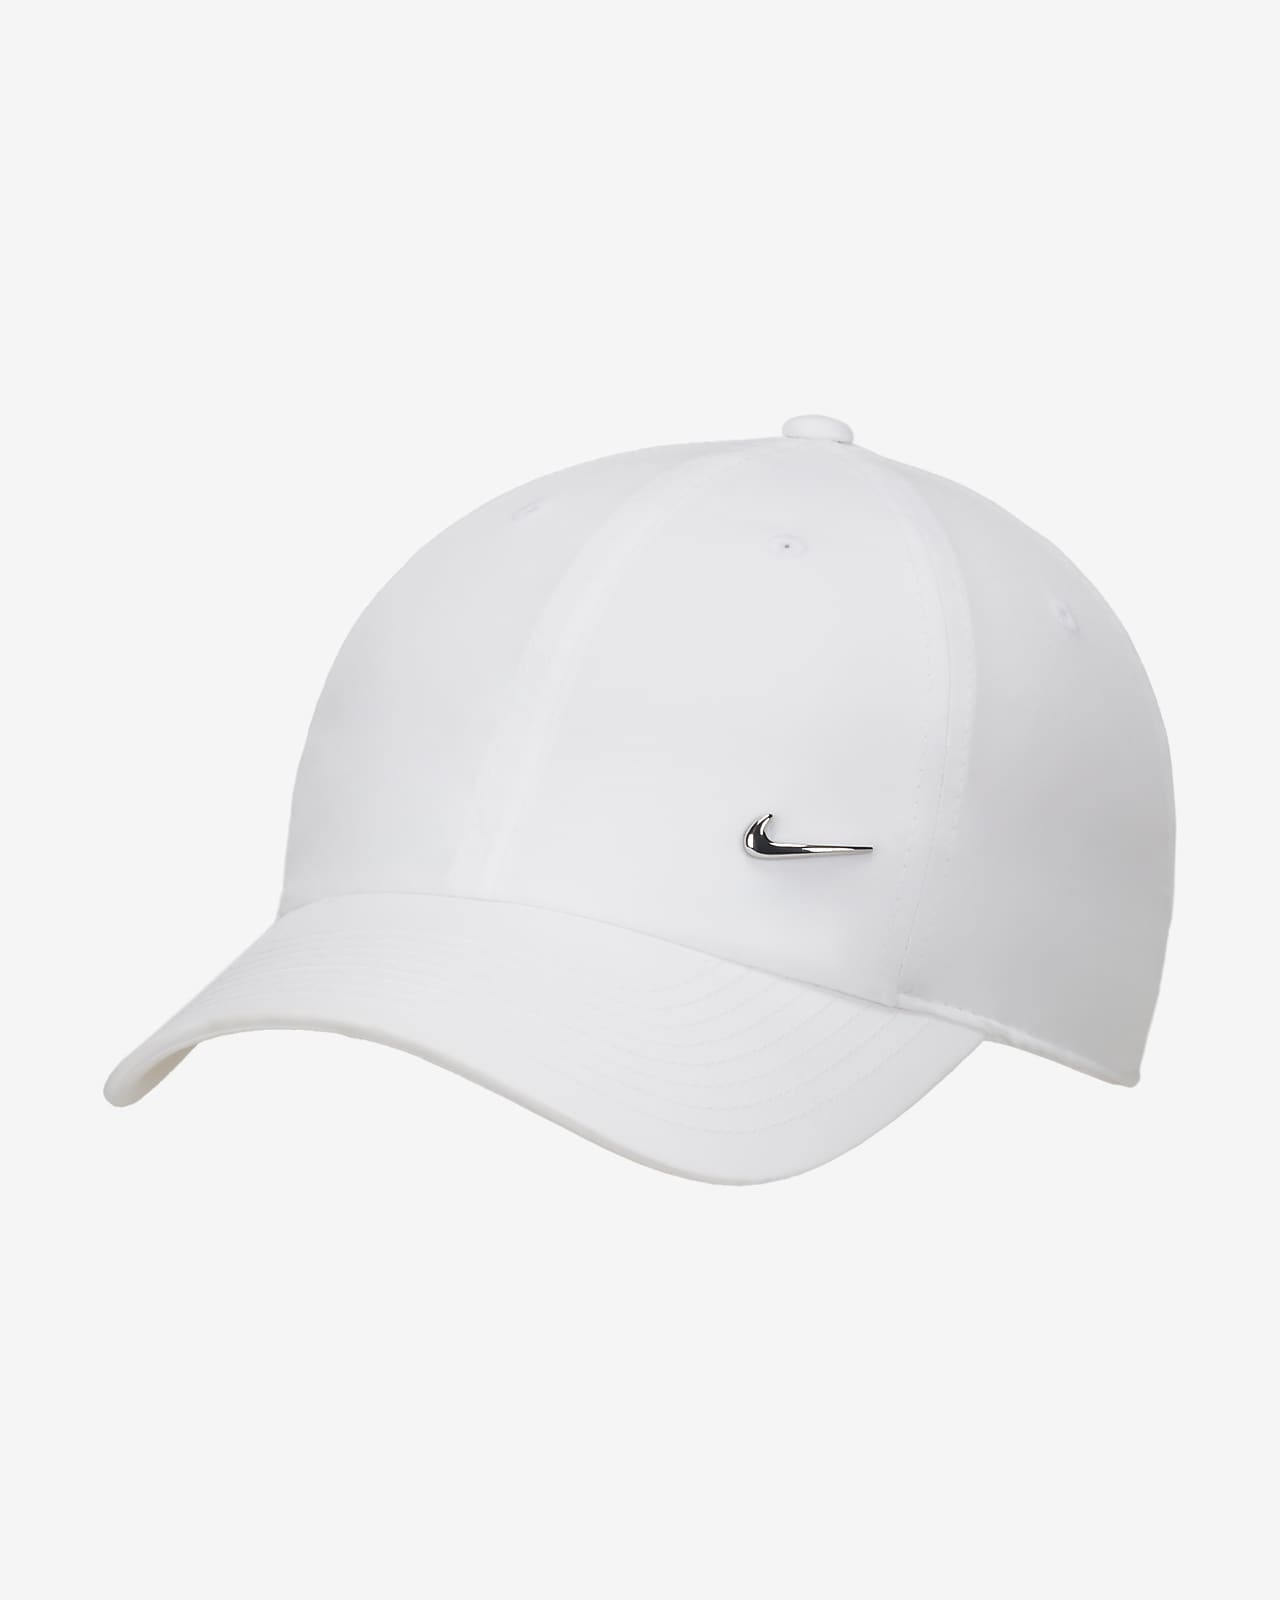 Εύκαμπτο καπέλο jockey με μεταλλικό σήμα Swoosh Nike Dri-FIT Club